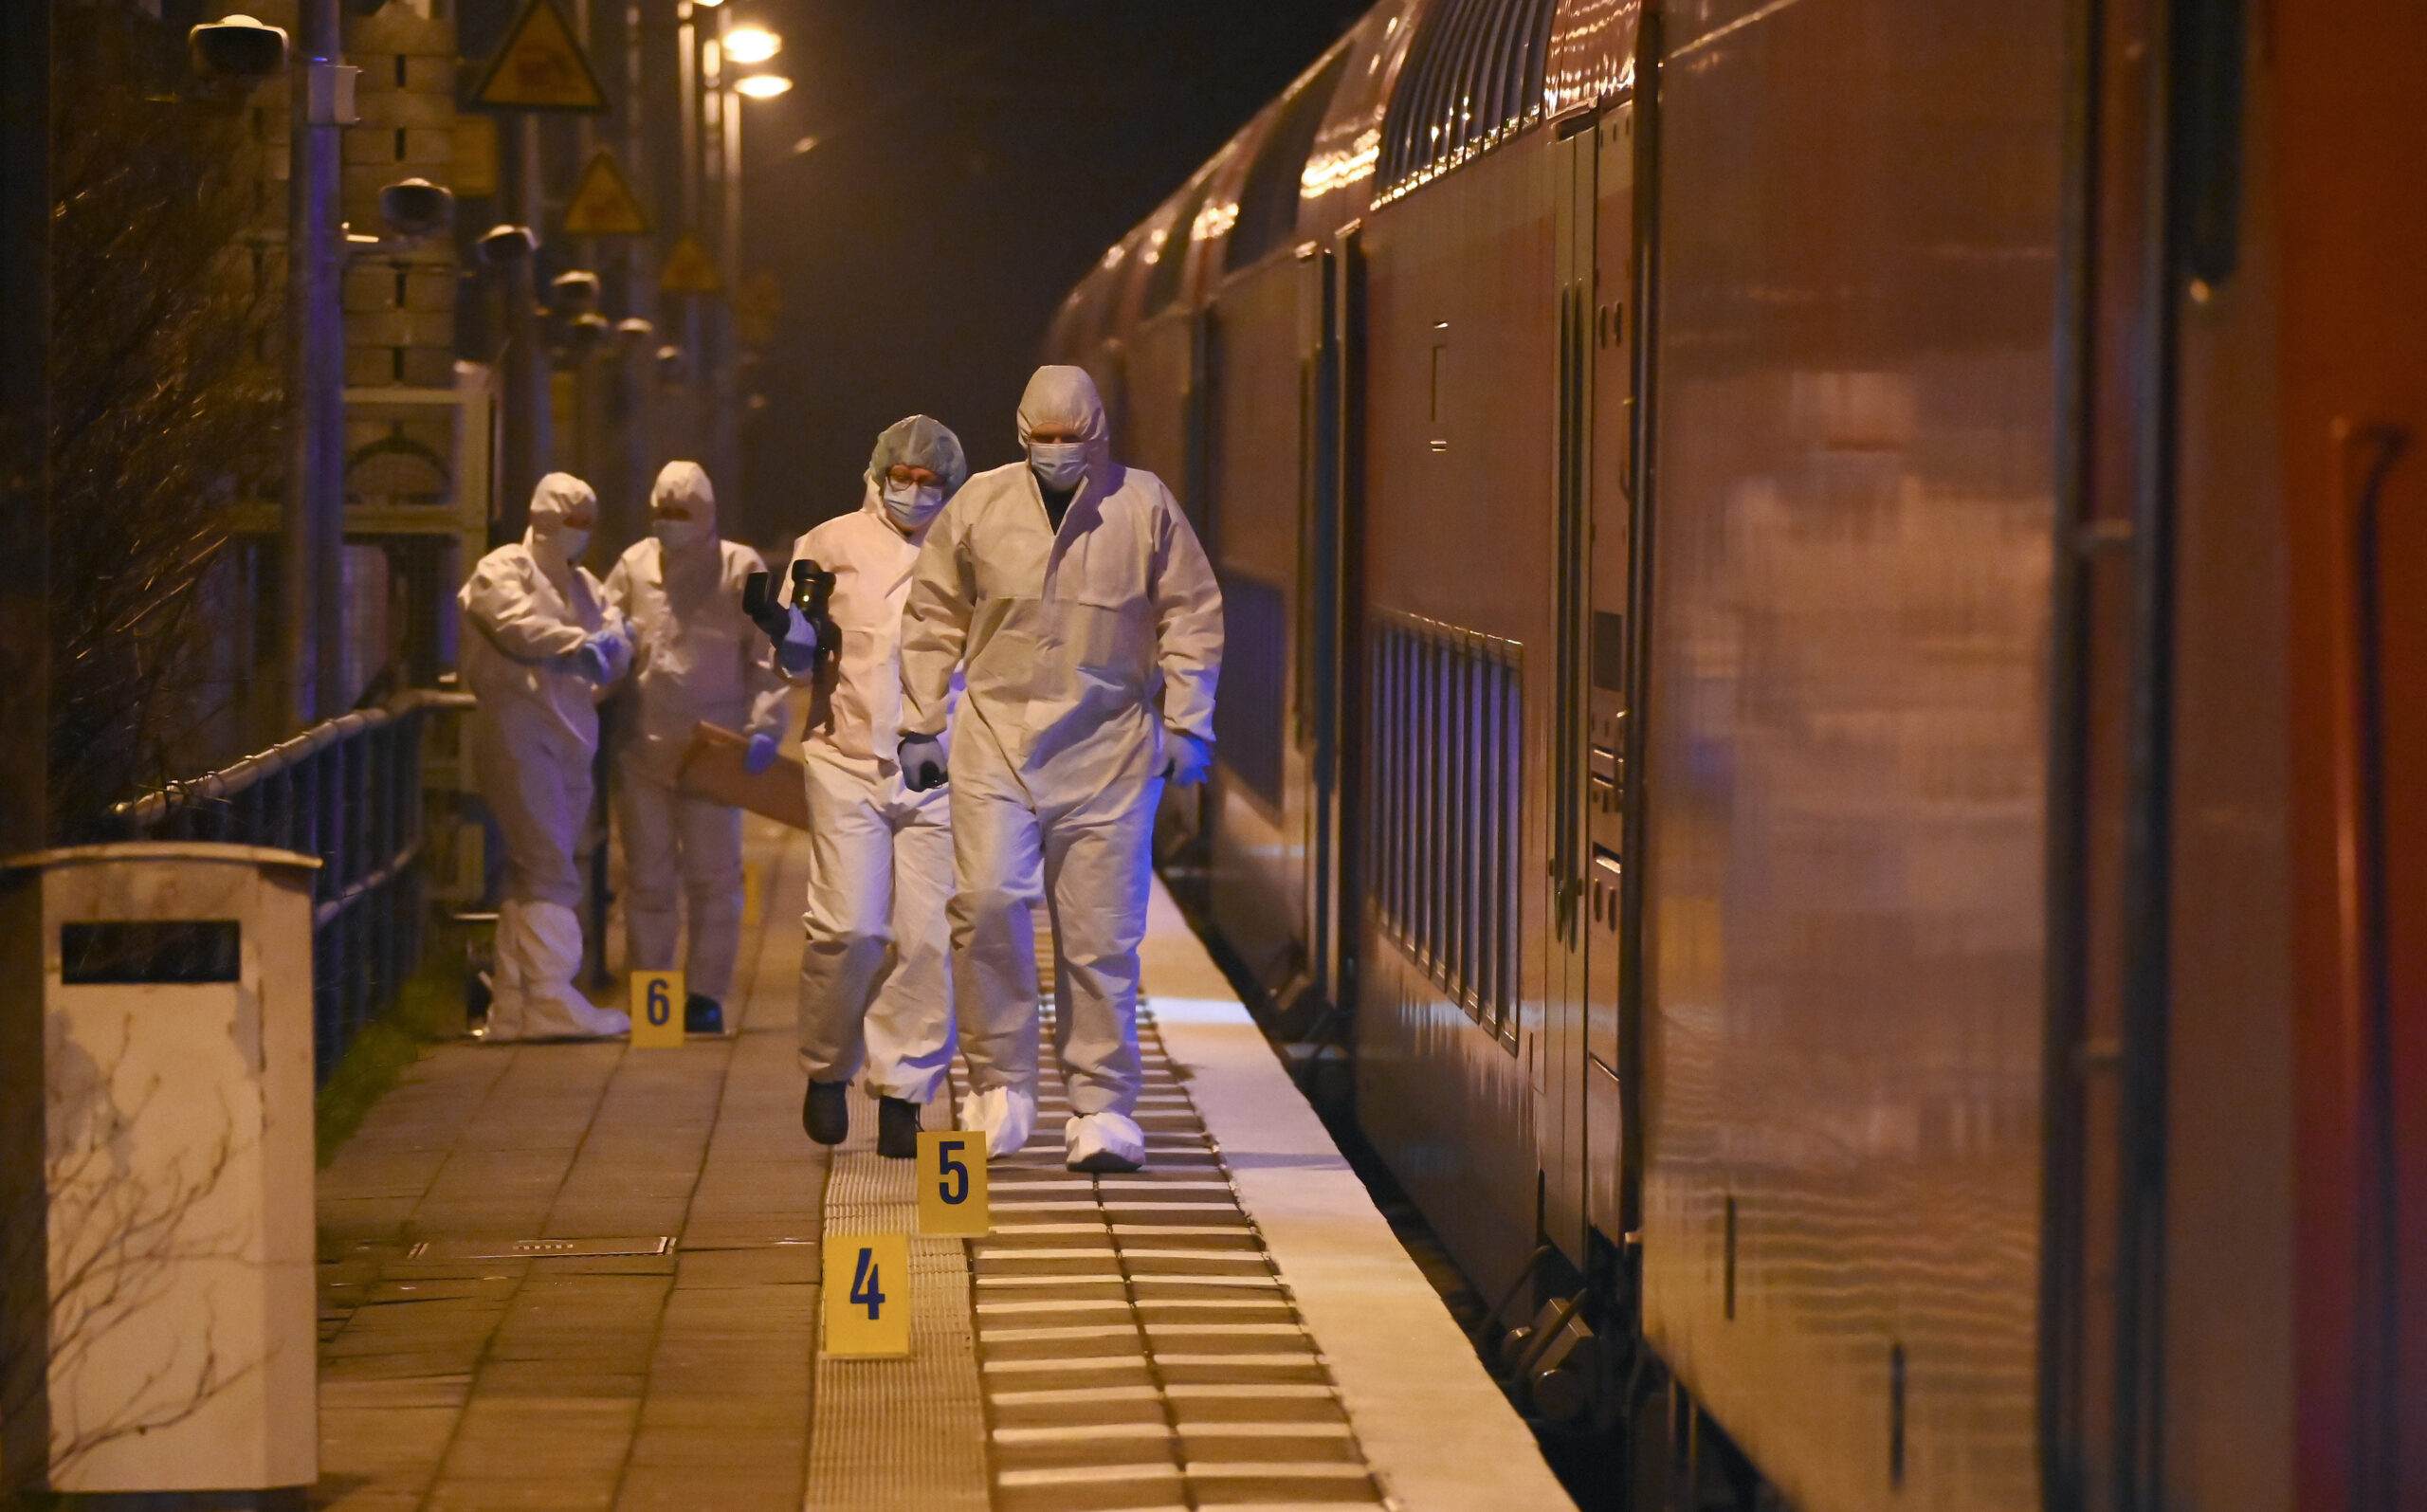 Mitarbeiter der Spurensicherung sind nach dem Messerangriff auf dem Bahnsteig im Einsatz.